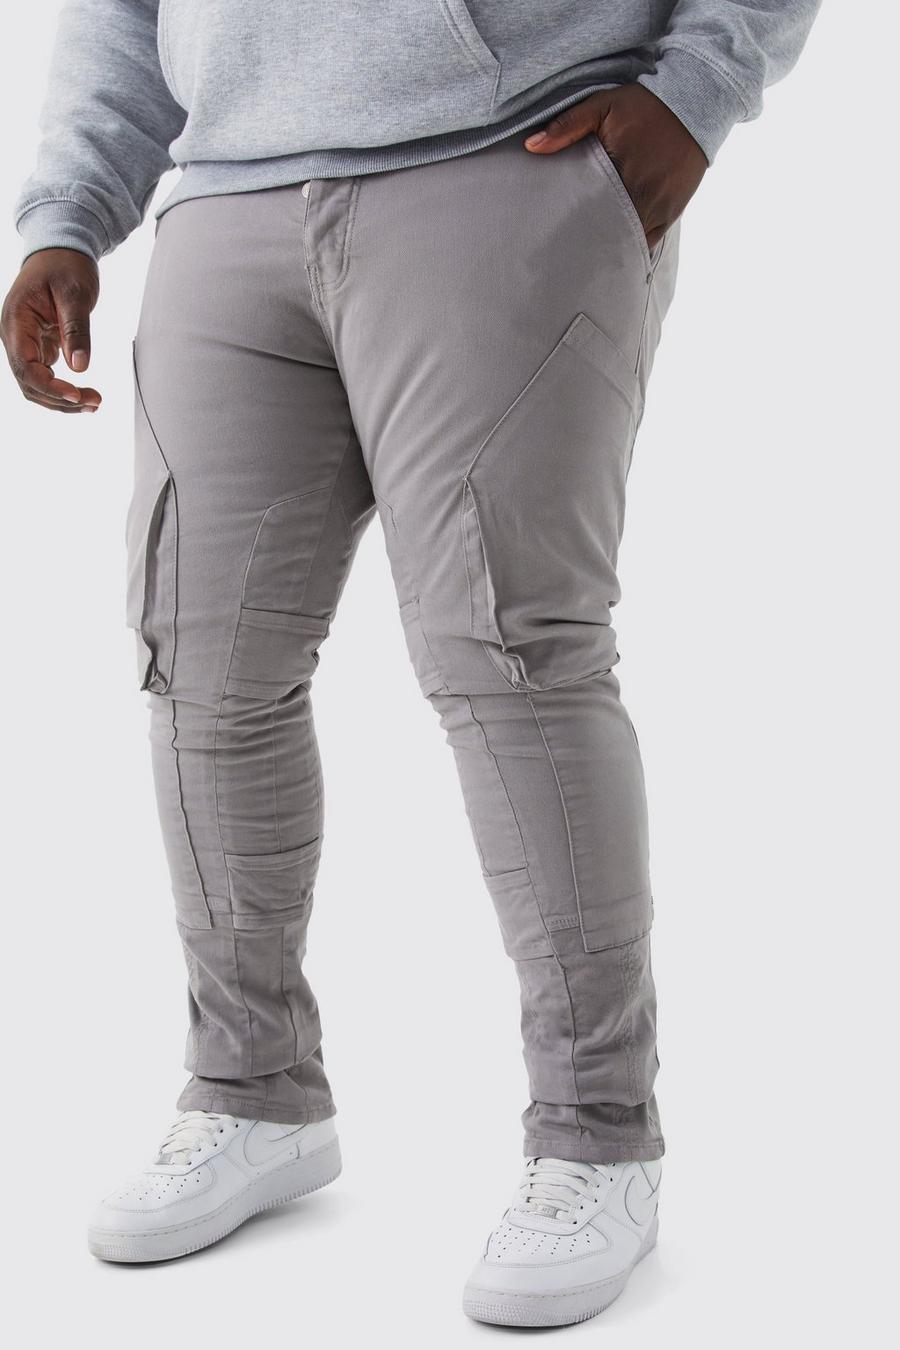 Pantalón Plus cargo pitillo con tiras fruncidas y cintura fija, Dark grey